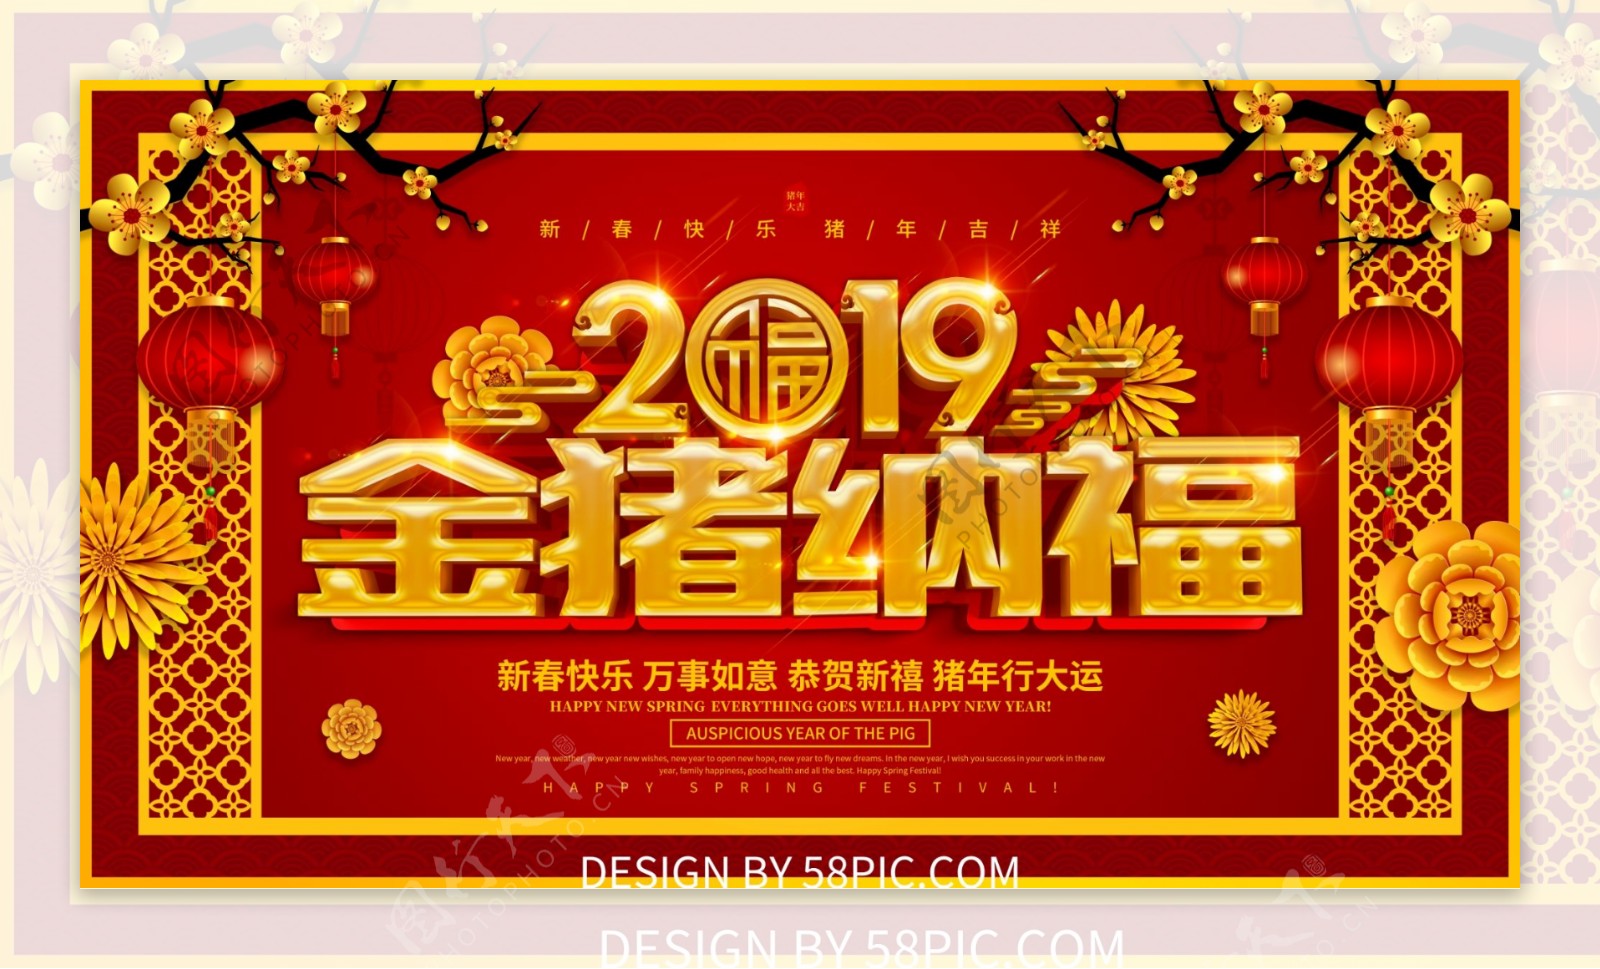 2019金猪纳福猪年海报设计